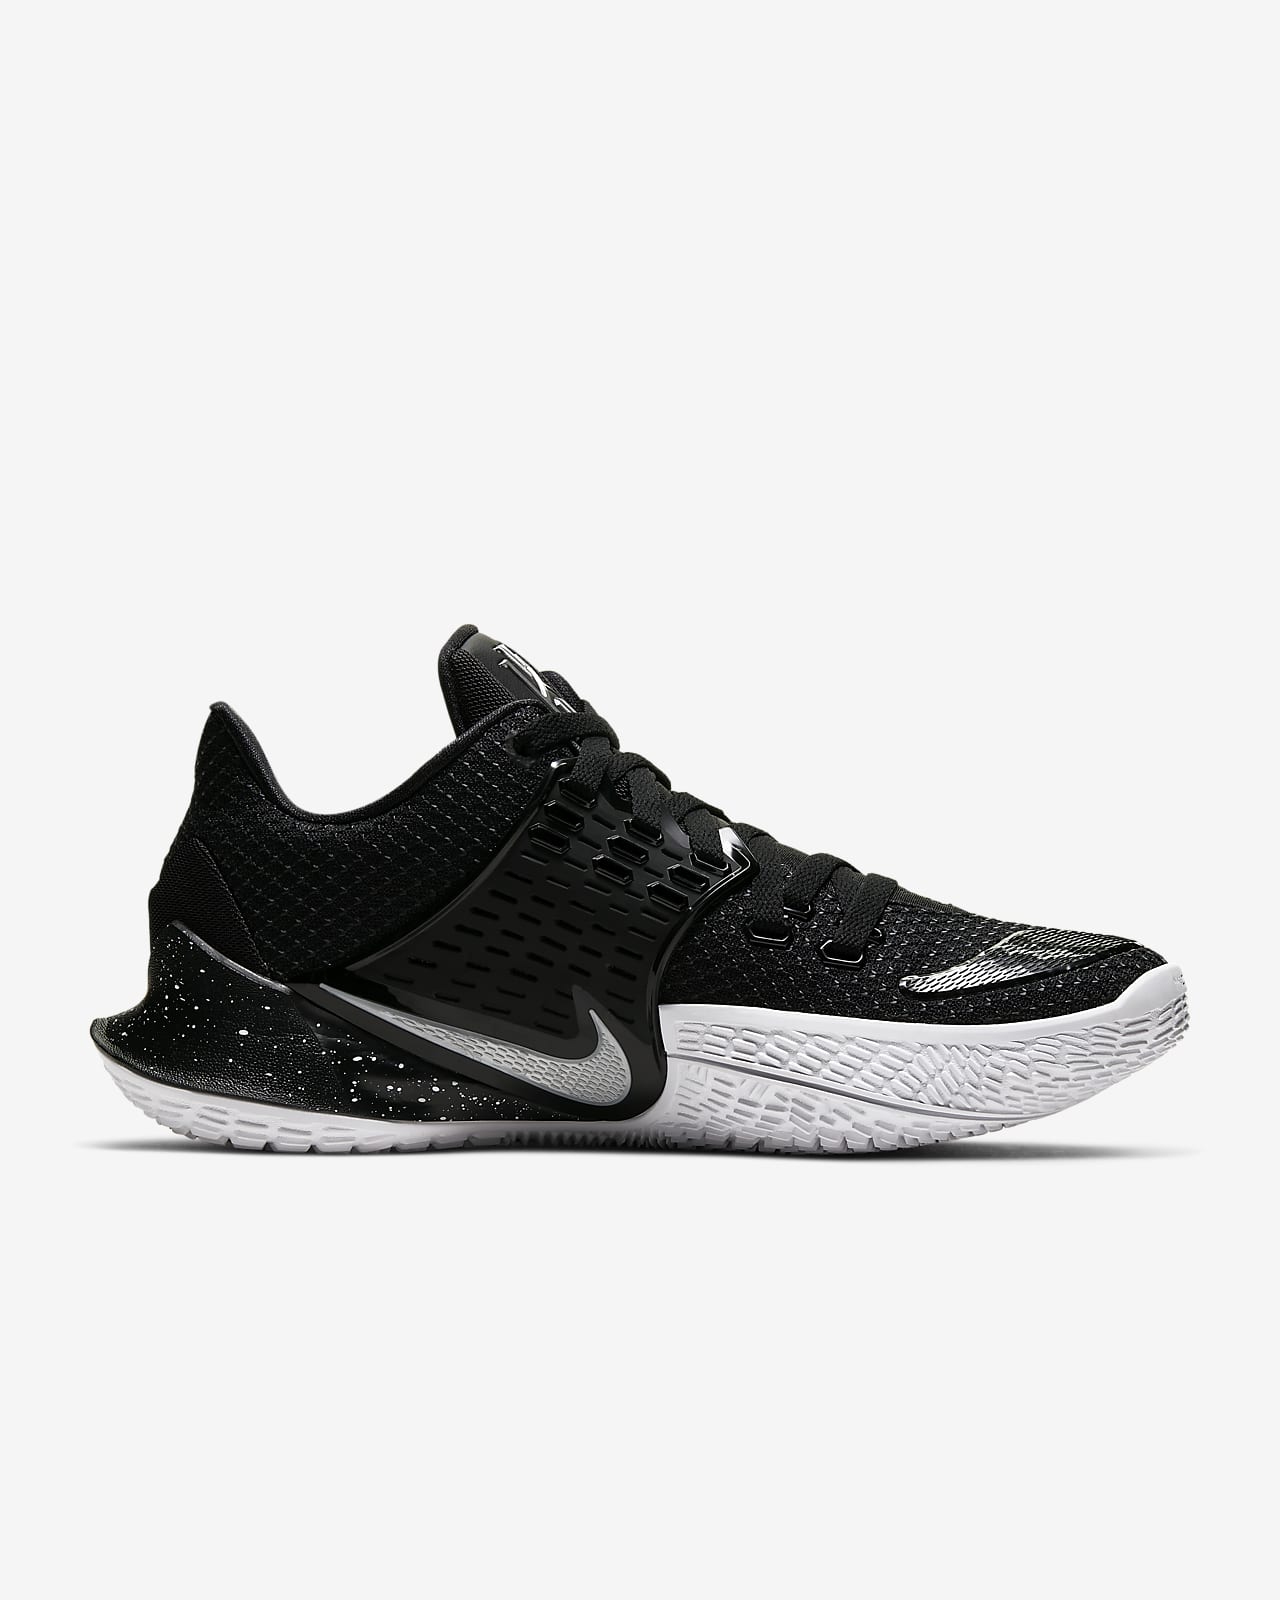 Kyrie Low 2 Basketball Shoe. Nike.com